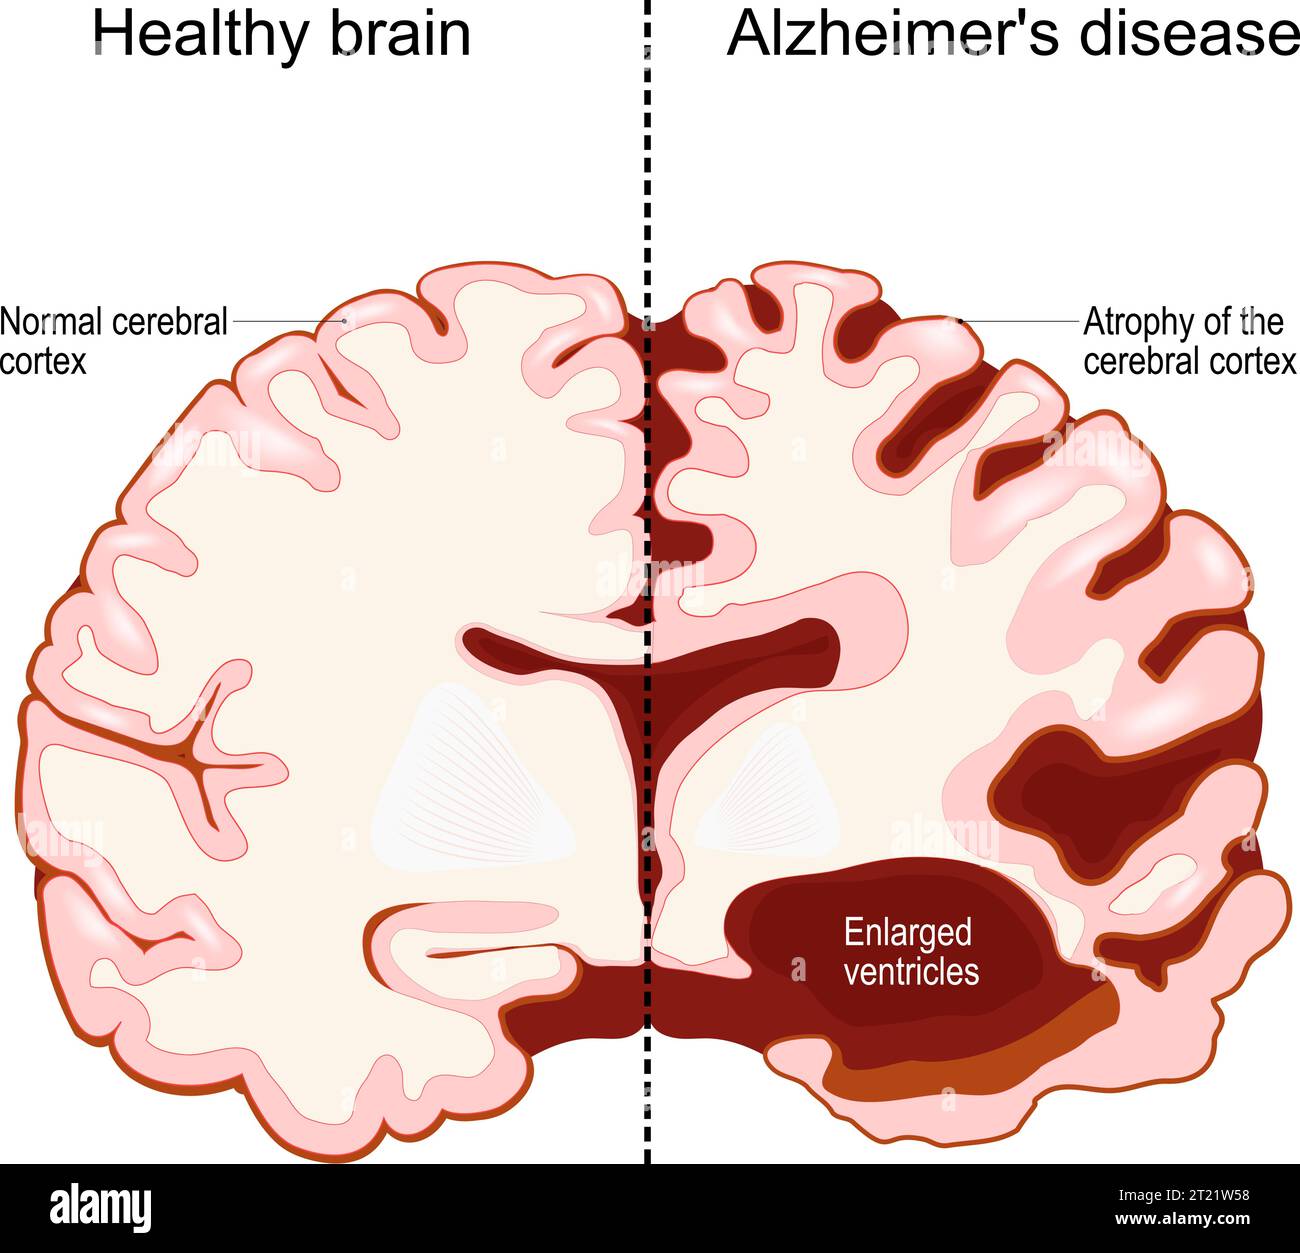 Menschliches Gehirn in zwei Hälften: Gesund und Alzheimer-Krankheit. Neurodegenerative Störung. Demenz. Gedächtnisverlust und kognitiver Rückgang. Querschnitt von Stock Vektor